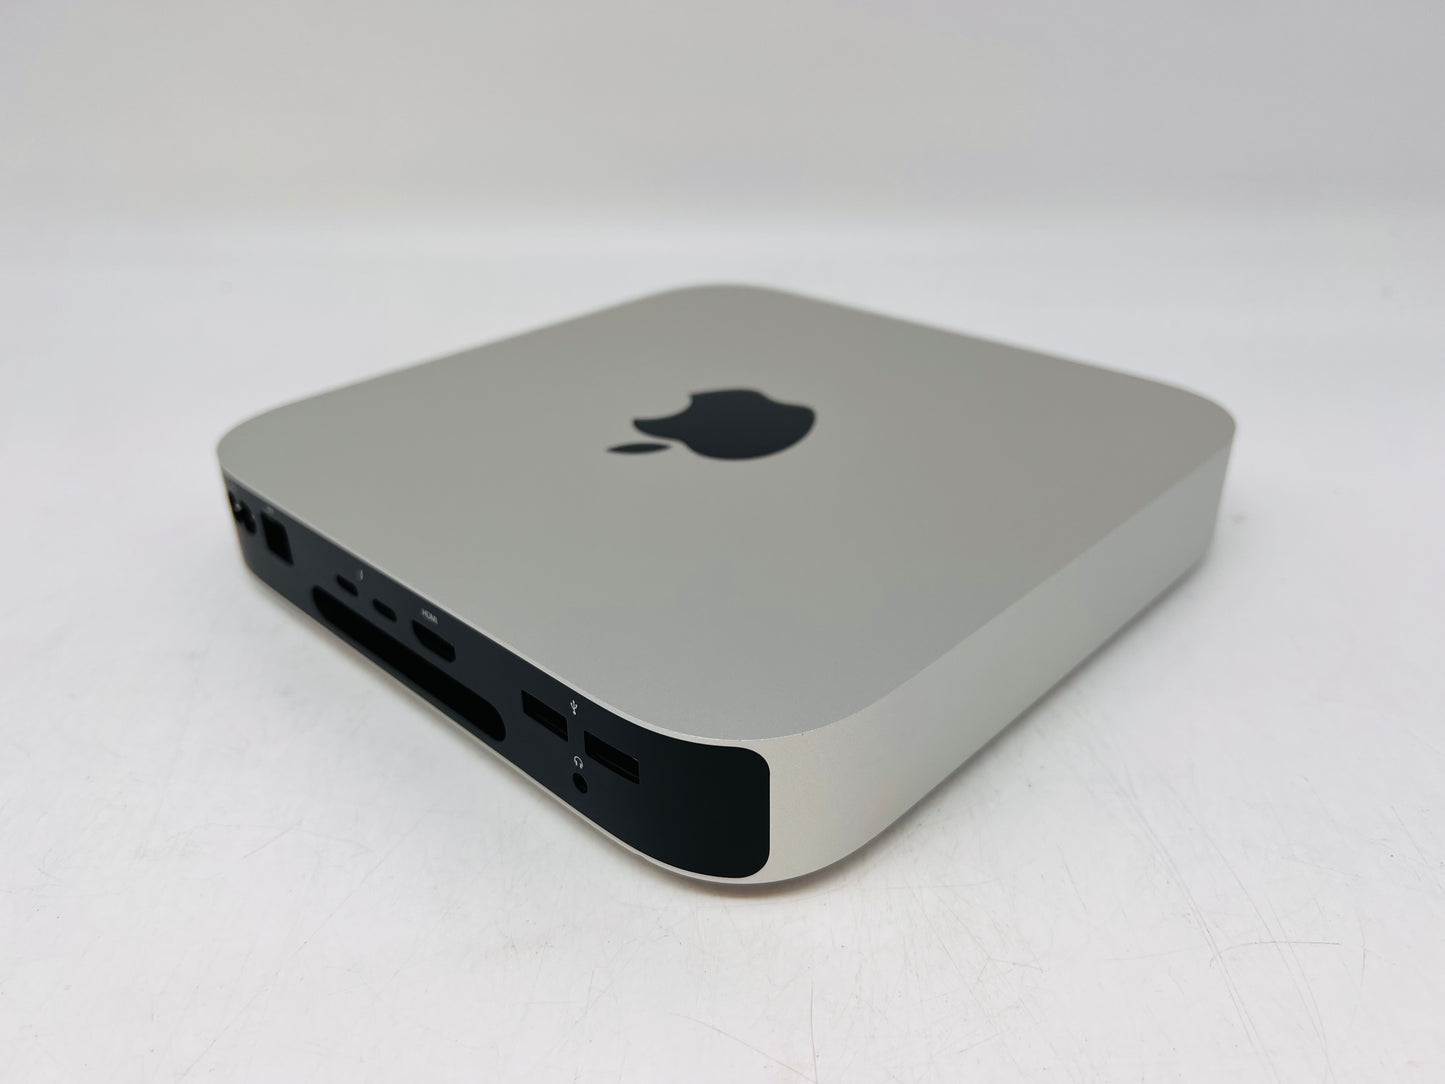 Apple Late 2020 Mac Mini M1 Chip 8GB Ram 256GB SSD